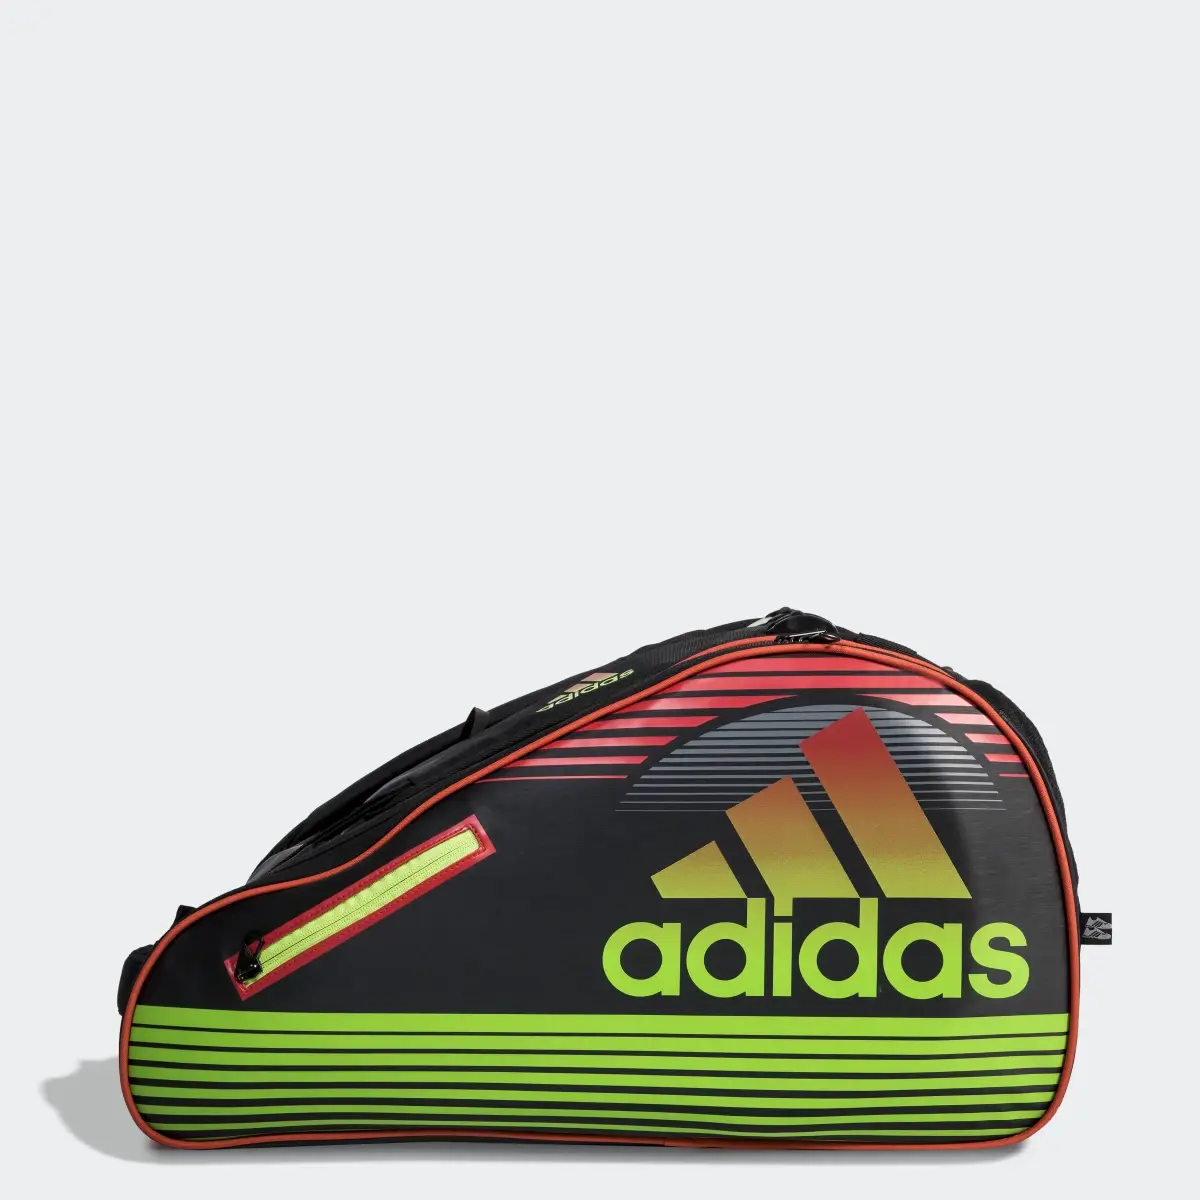 Adidas Tour Racquet Bag. 1